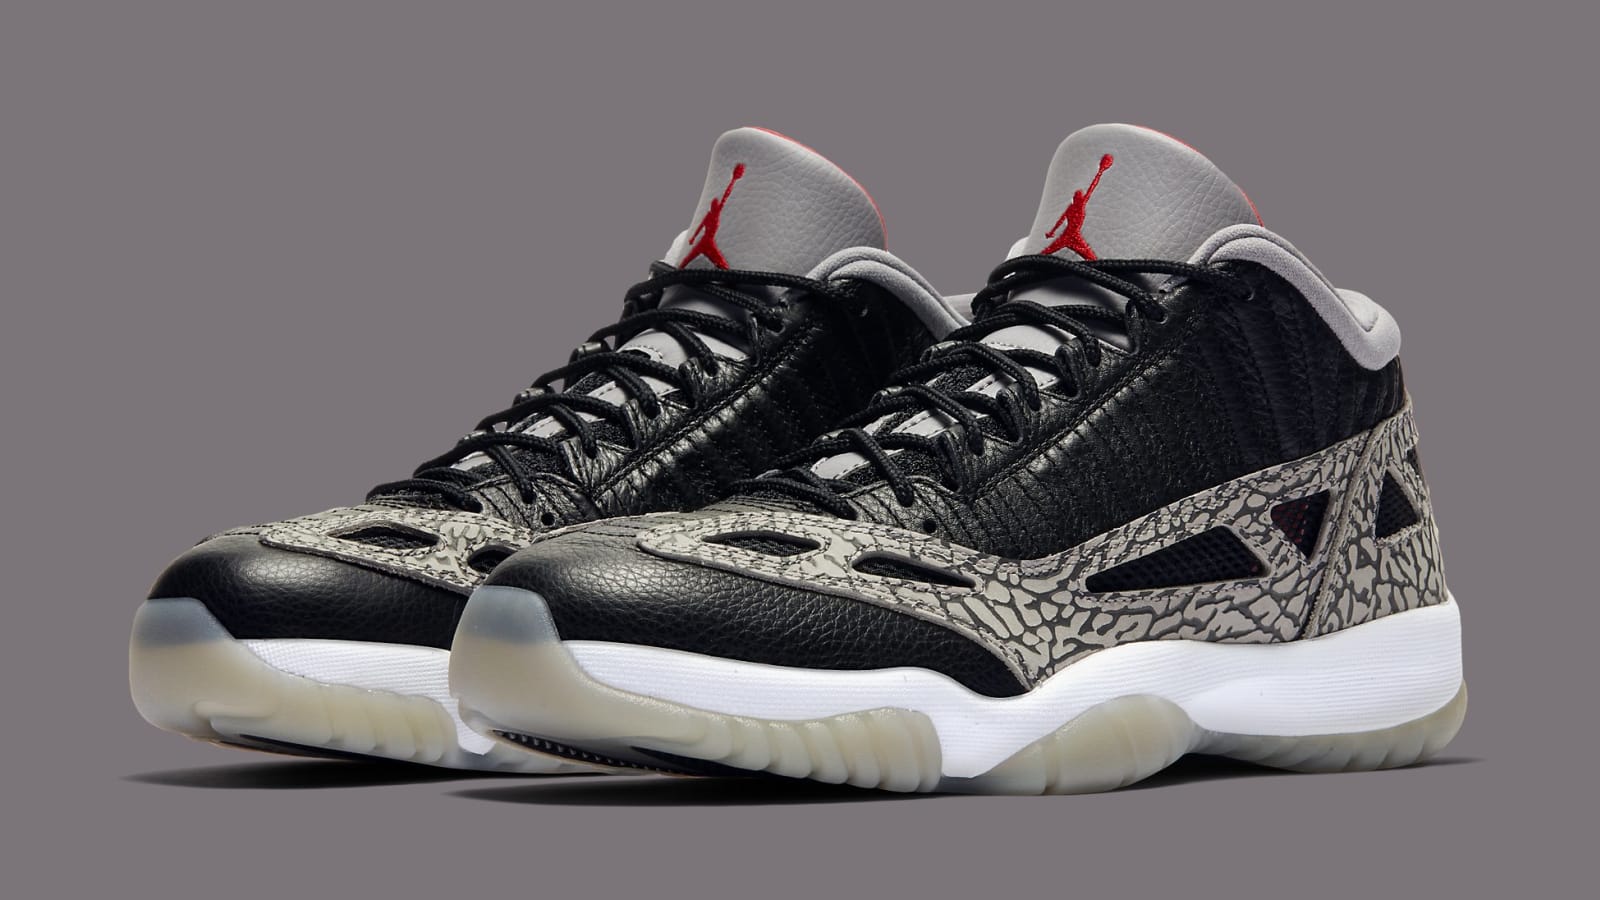 Air Jordan 11 Low IE &quot;Black Cement&quot; Unveiled: Release Info